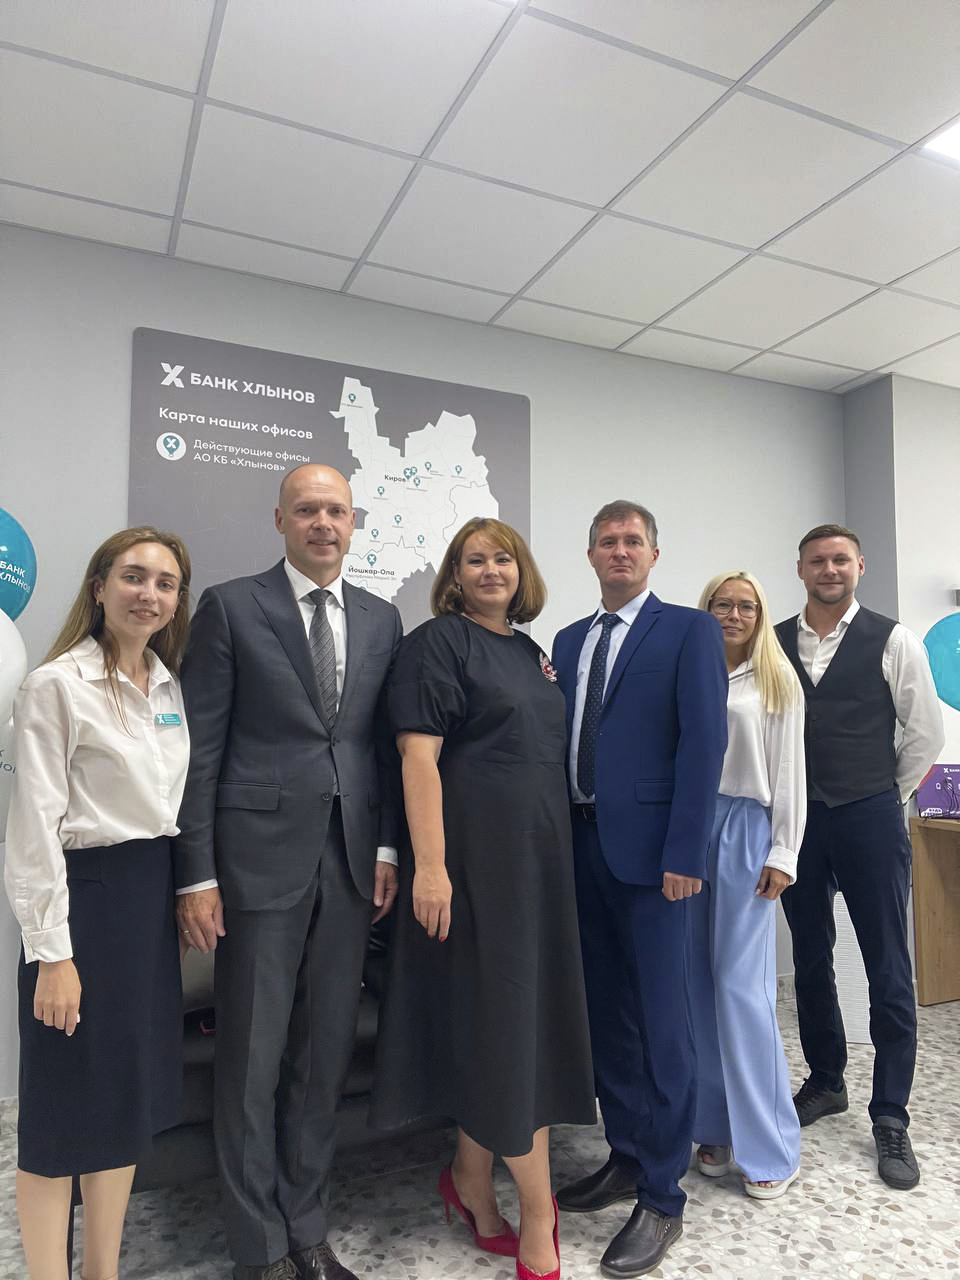 В Пензе состоялось торжественное открытие офиса банка «Хлынов»